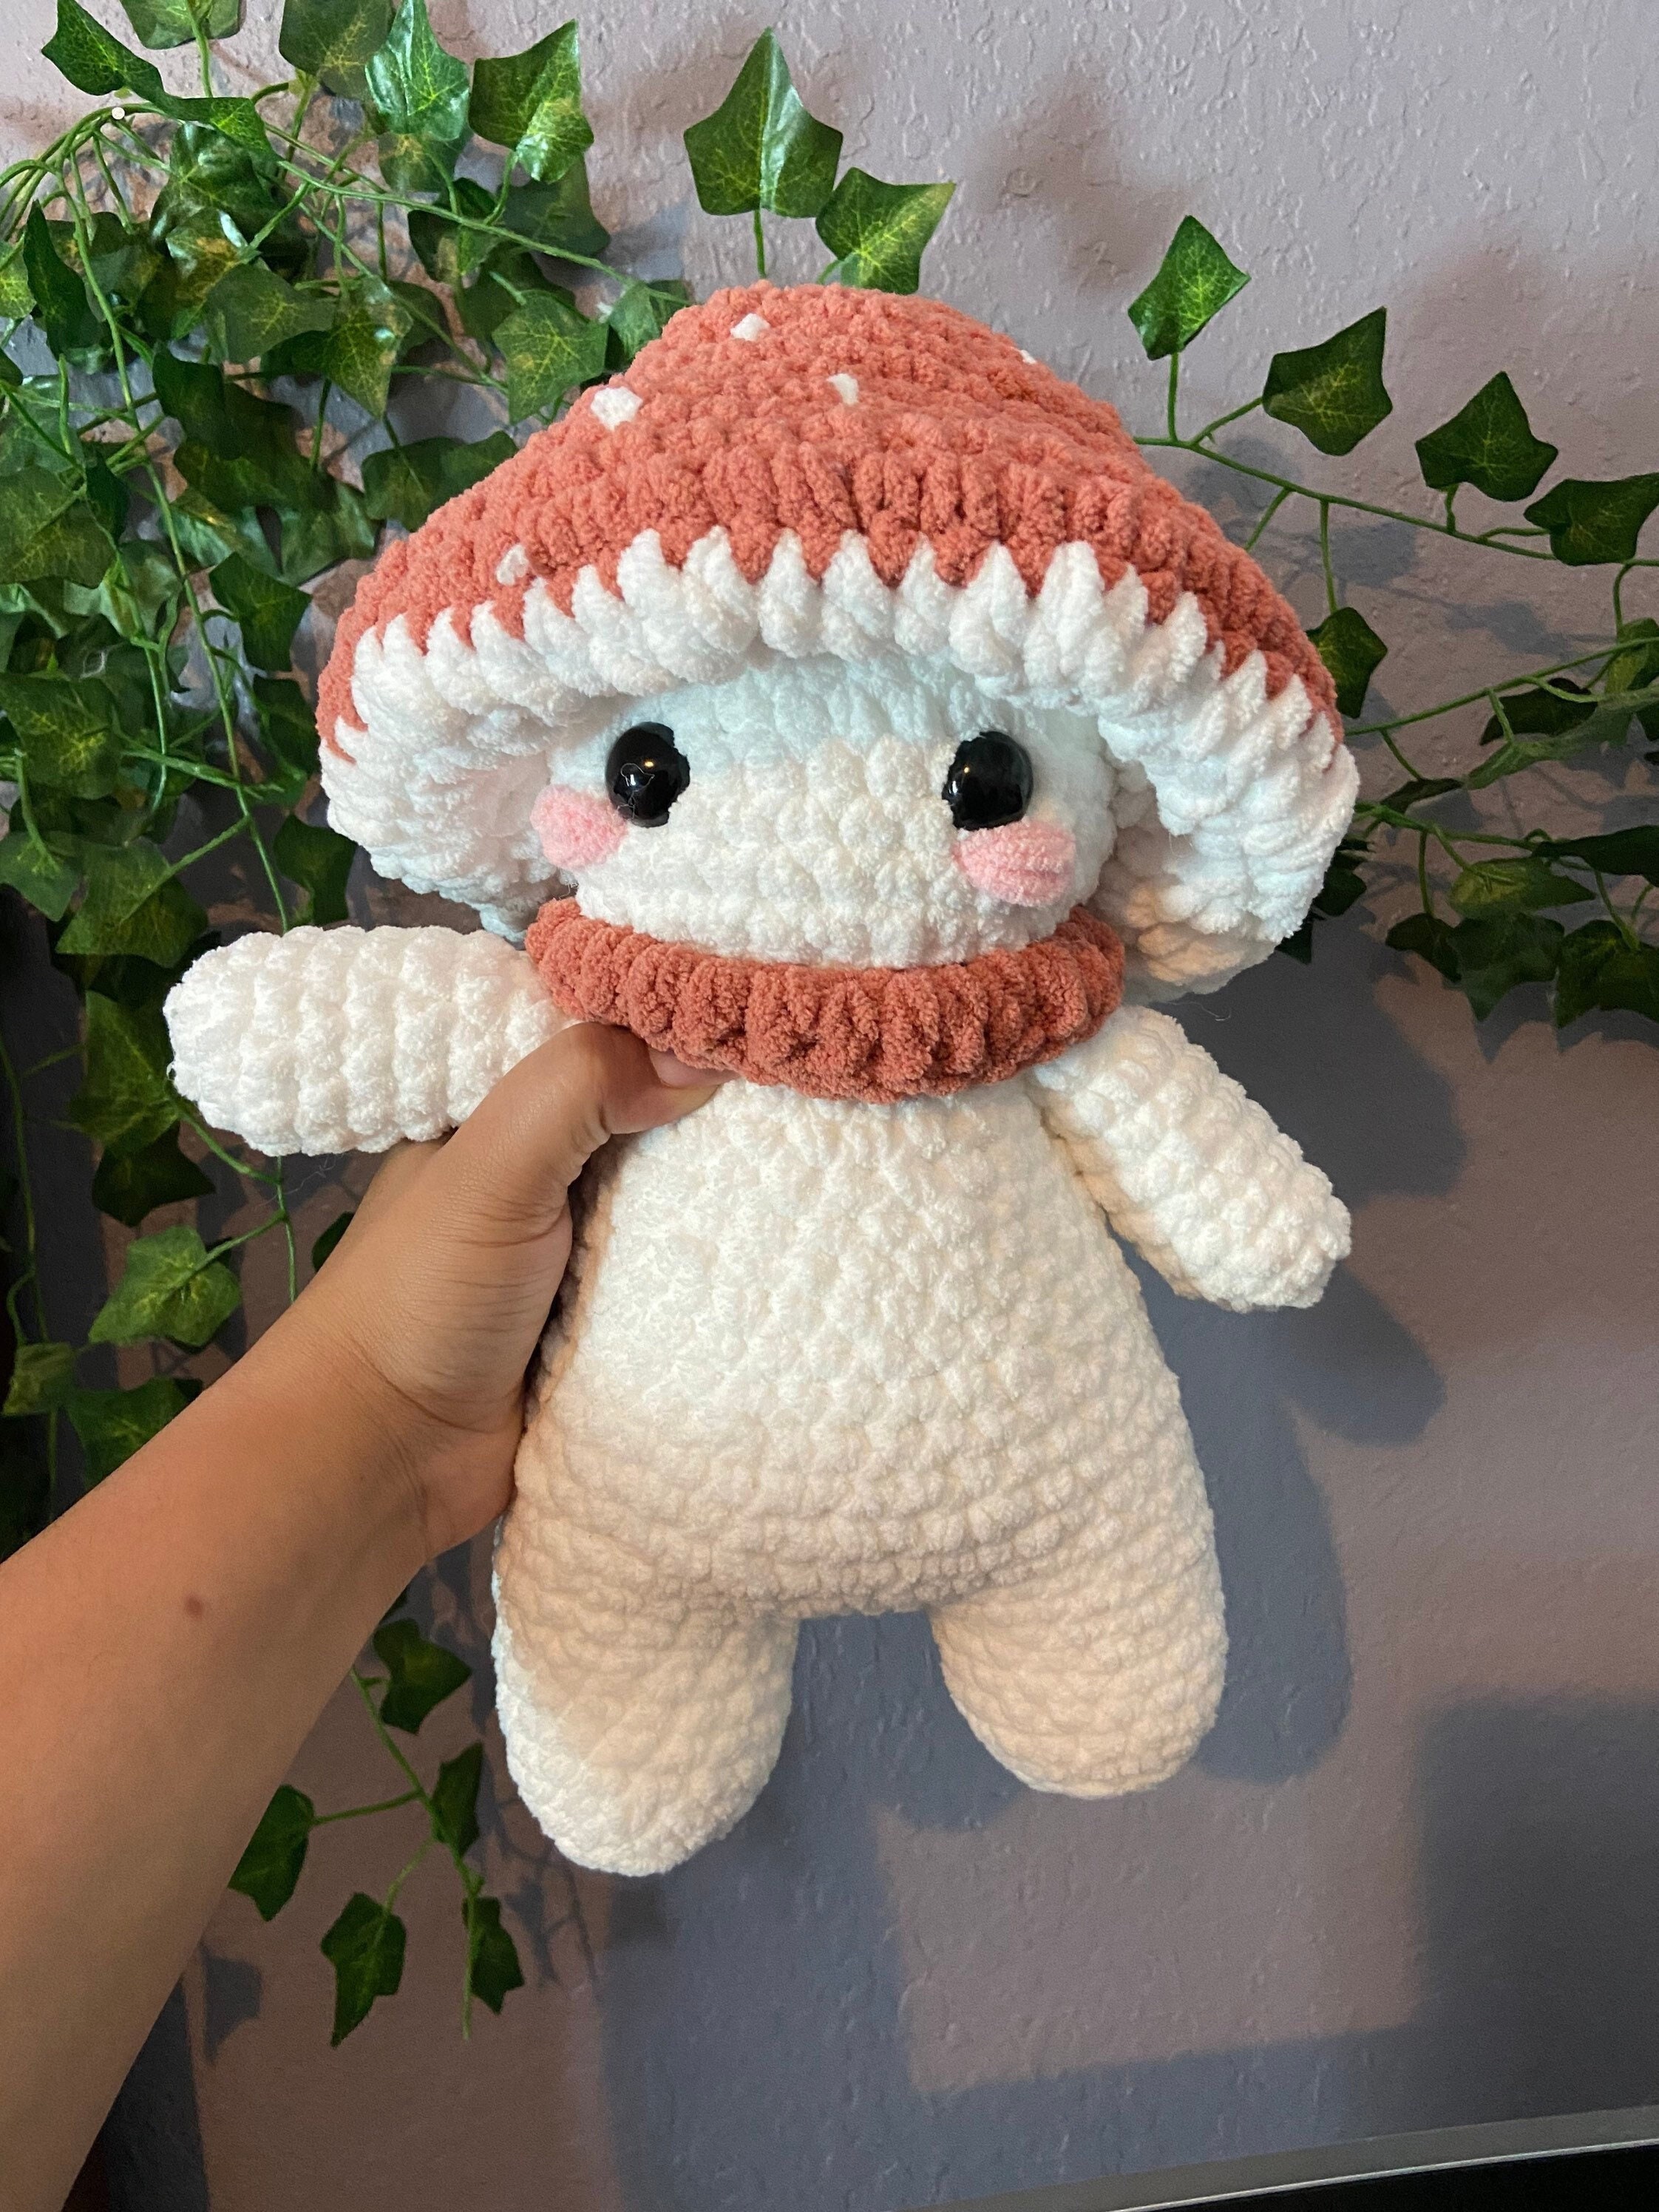 Little Mushroom Crochet Kit by Crochet Box